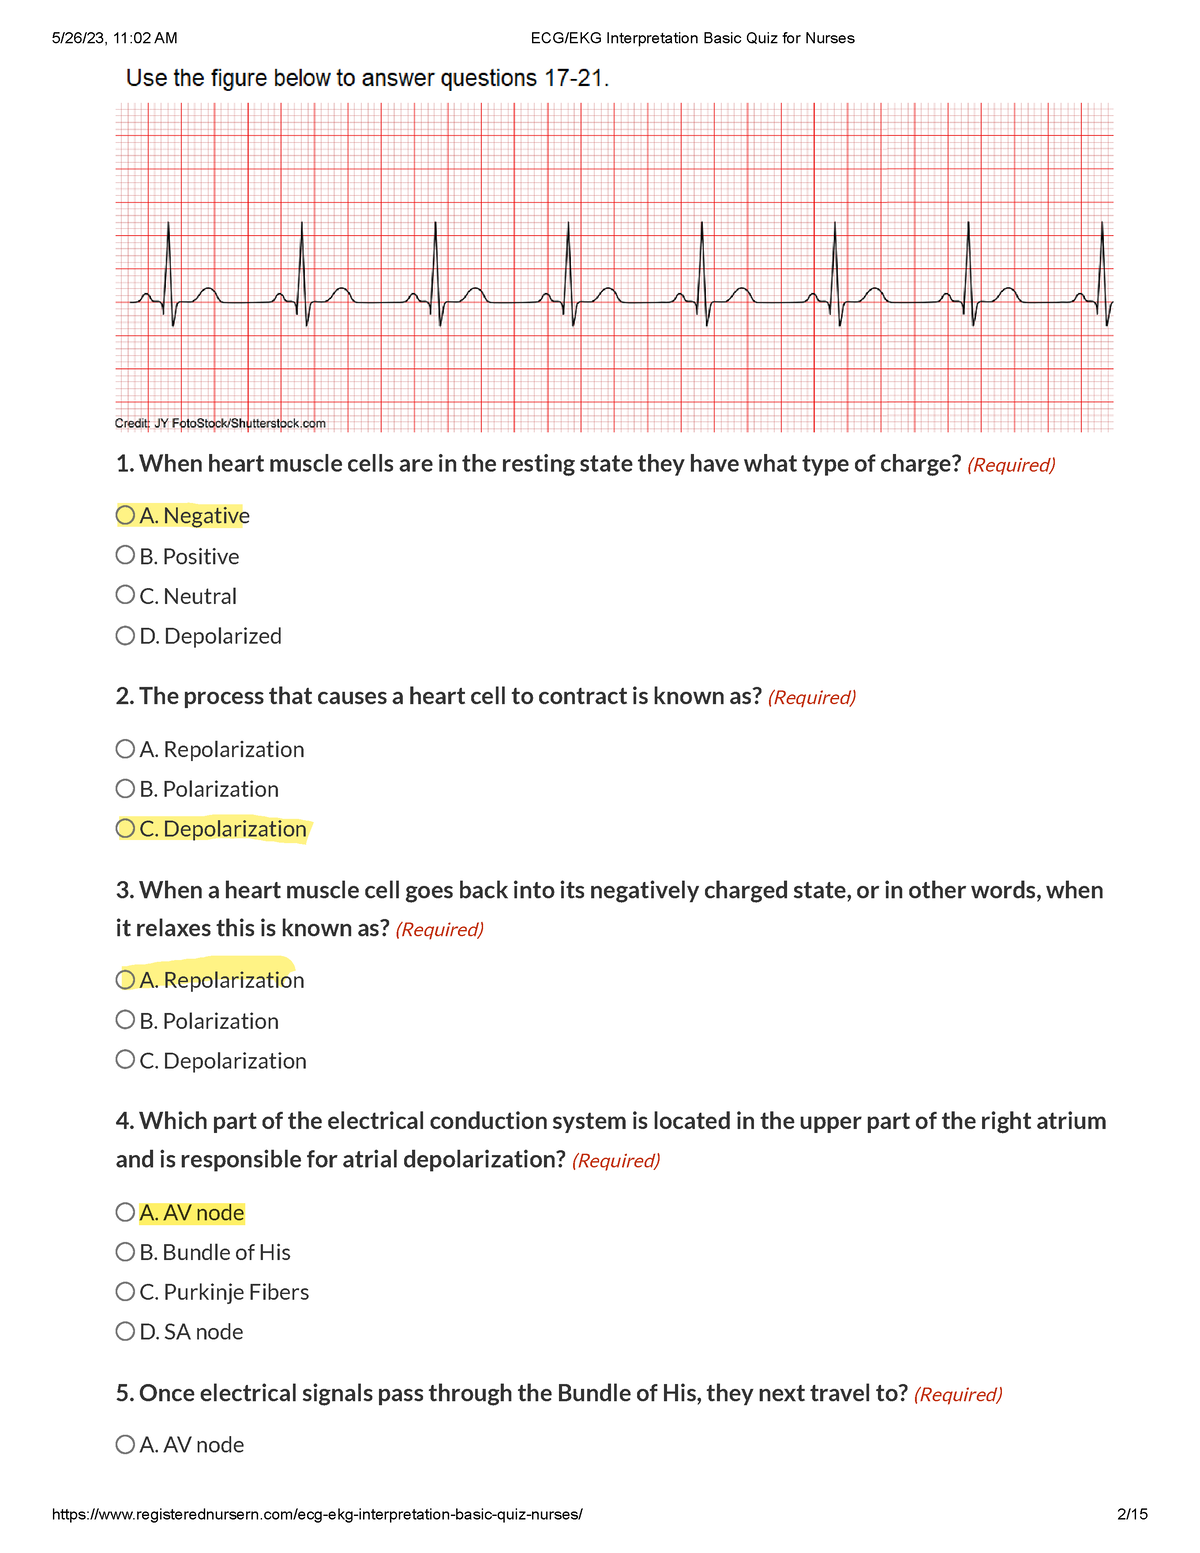 EKG Interpretation for Nurses